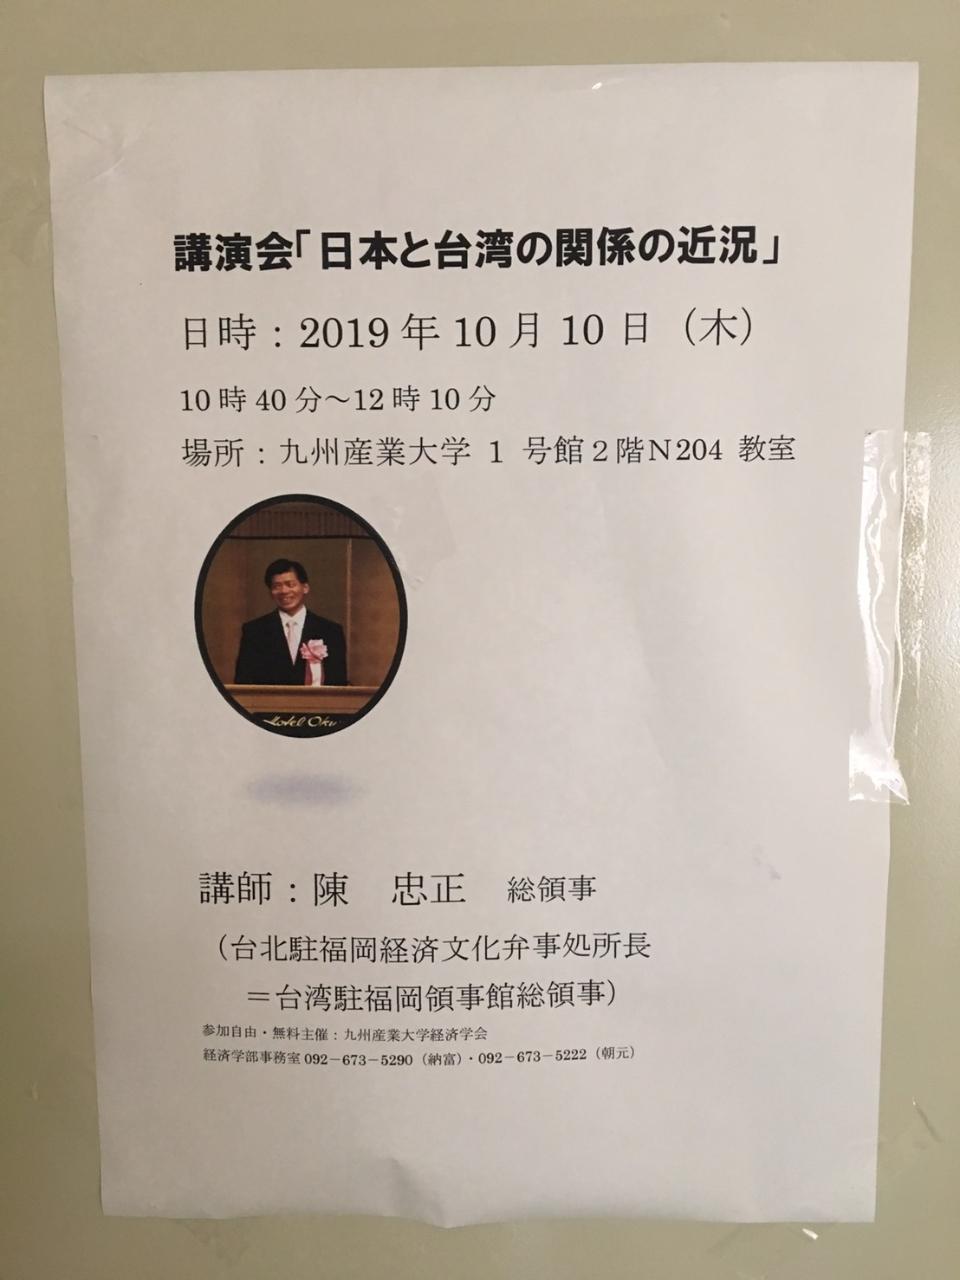 10月10日，陳總領事應邀於九州產業大學，以「日本與台灣關係的近況」為題進行演講。